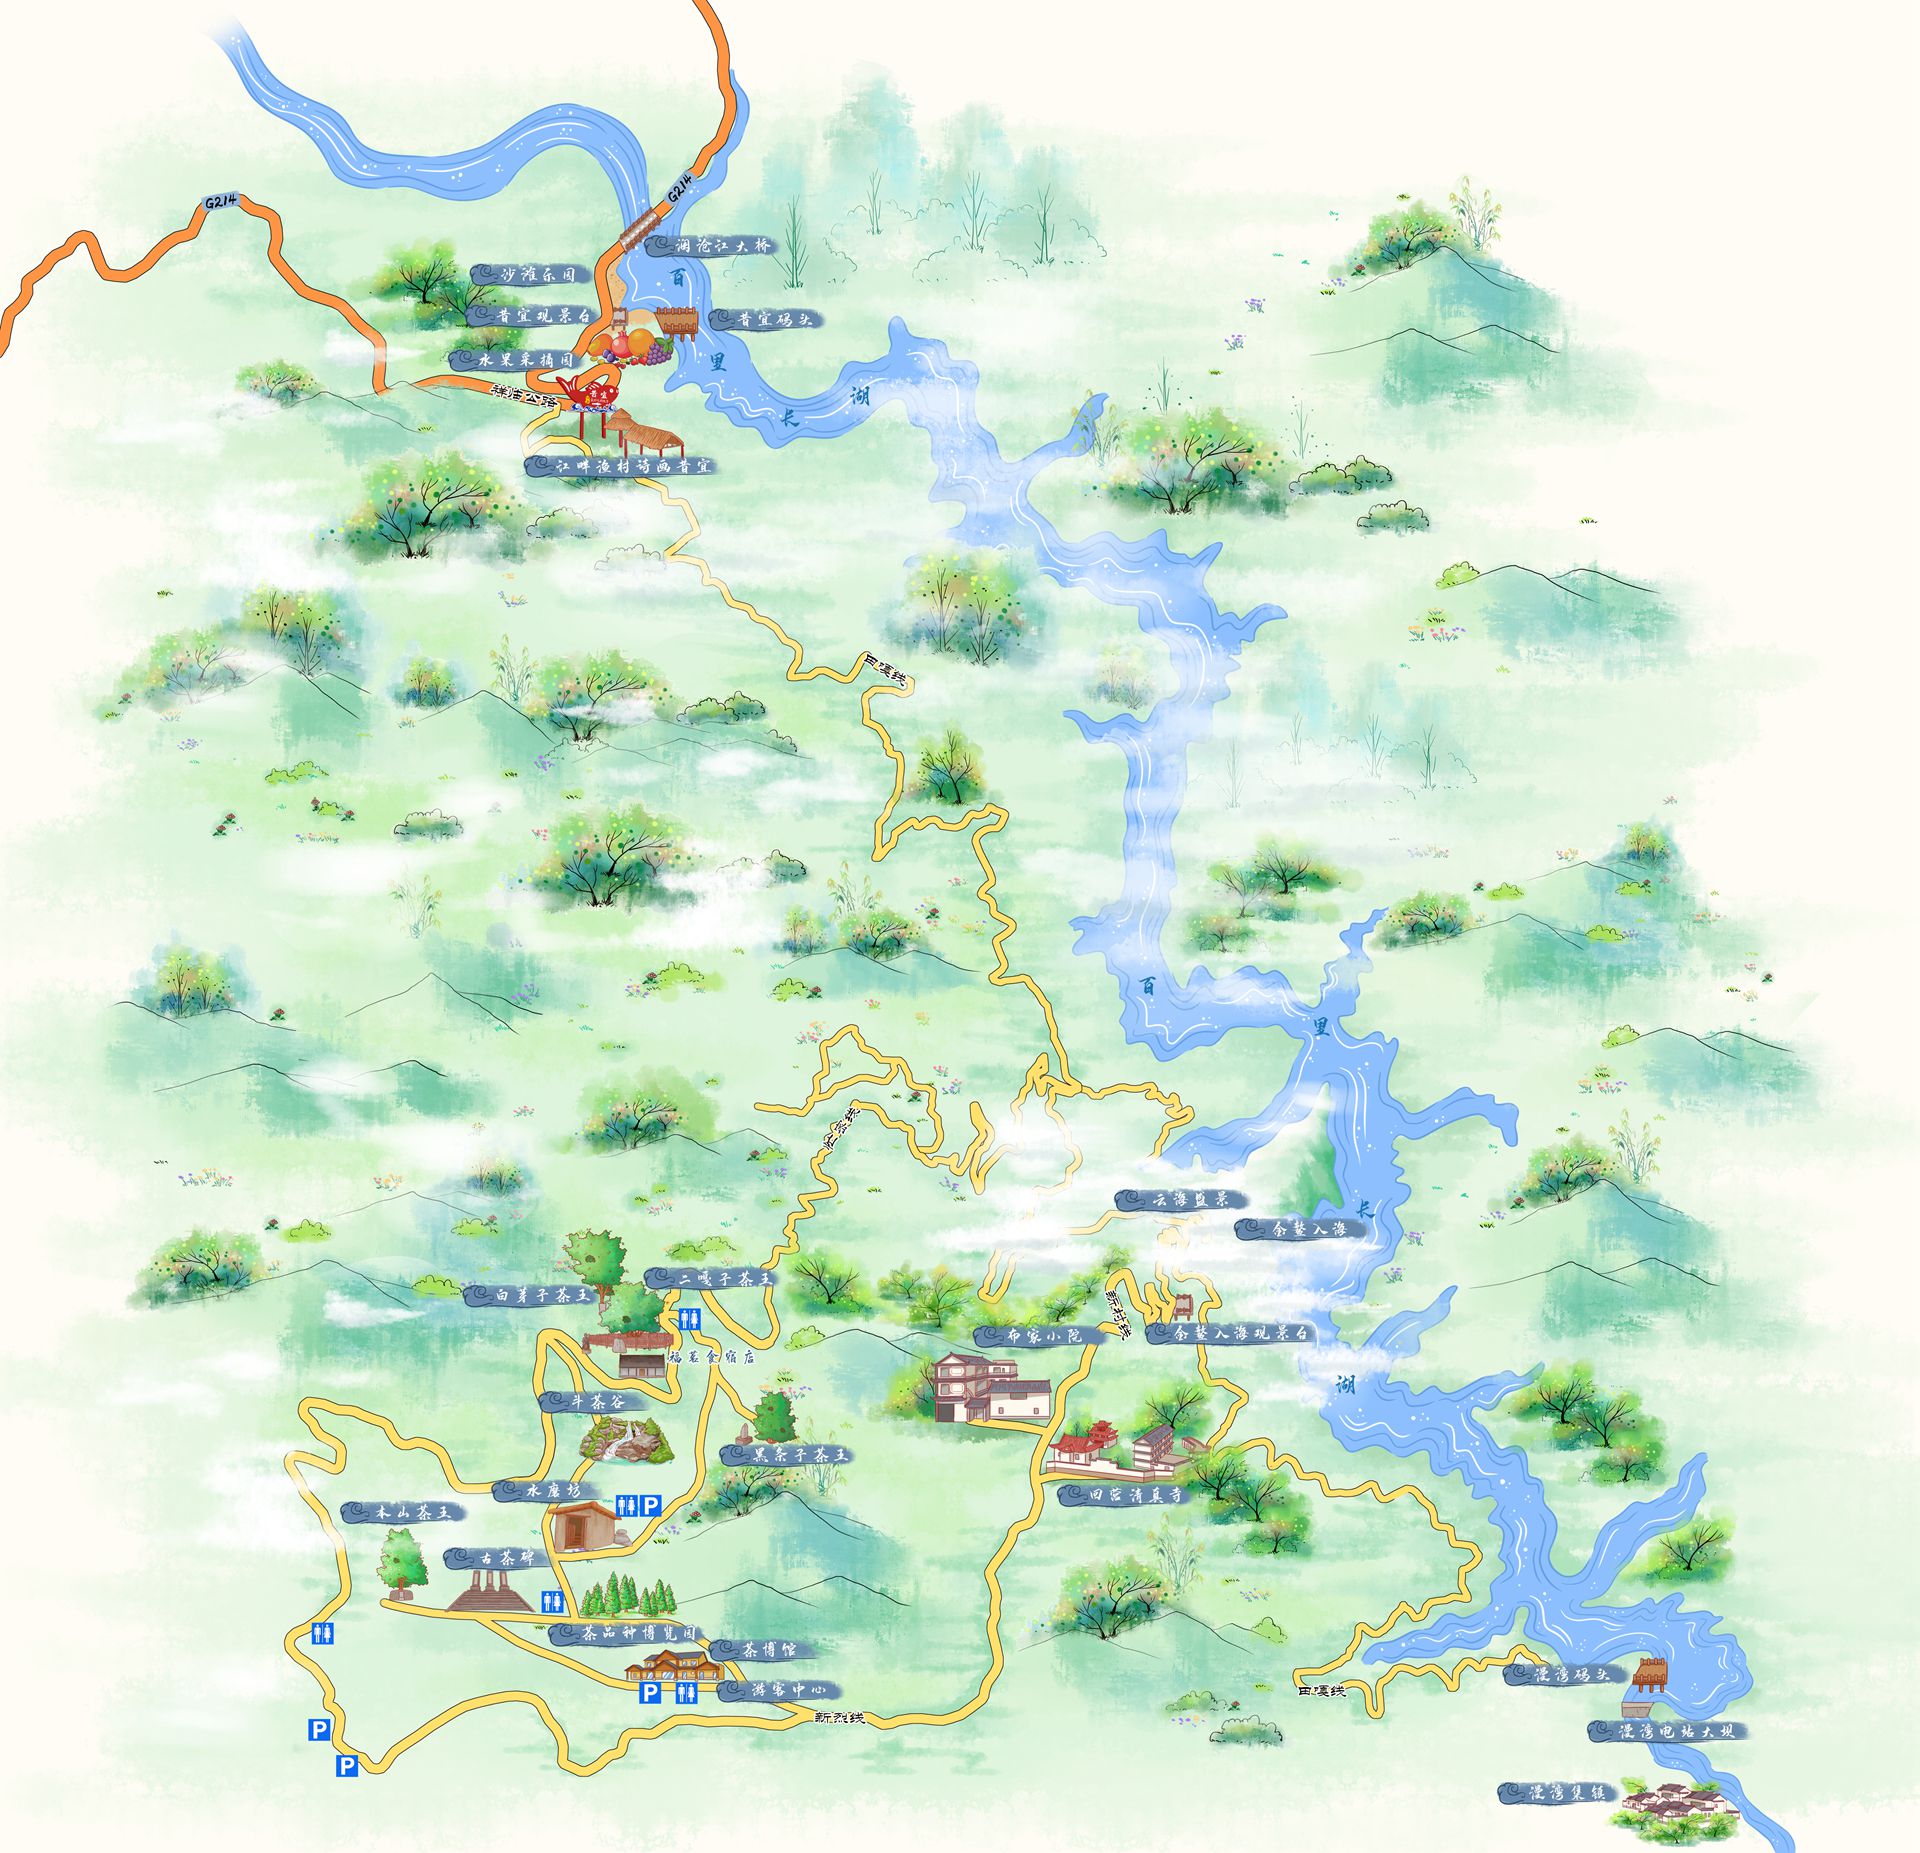 云县漫湾镇：“三张牌”描绘绿美乡村新图景 | 央媒头条